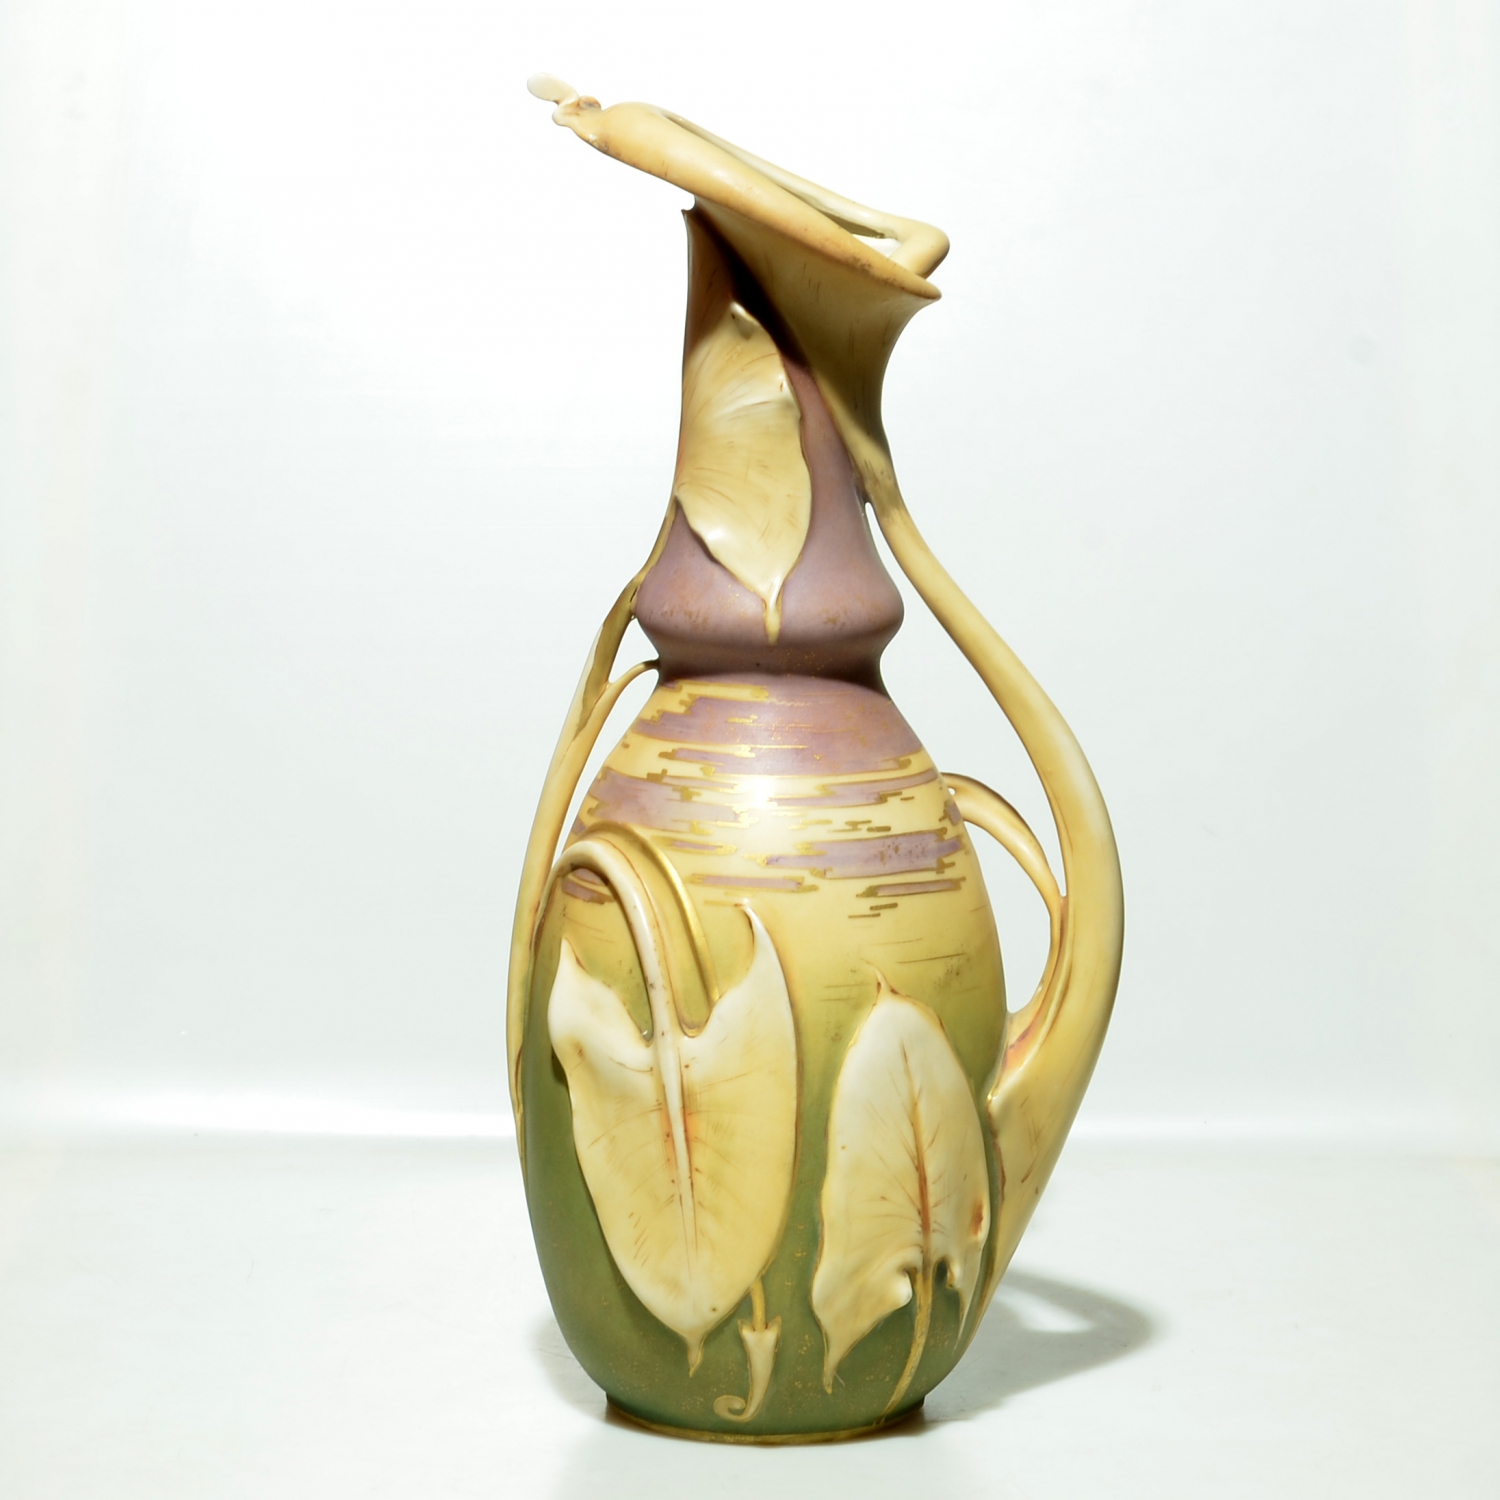 Váza Amphora